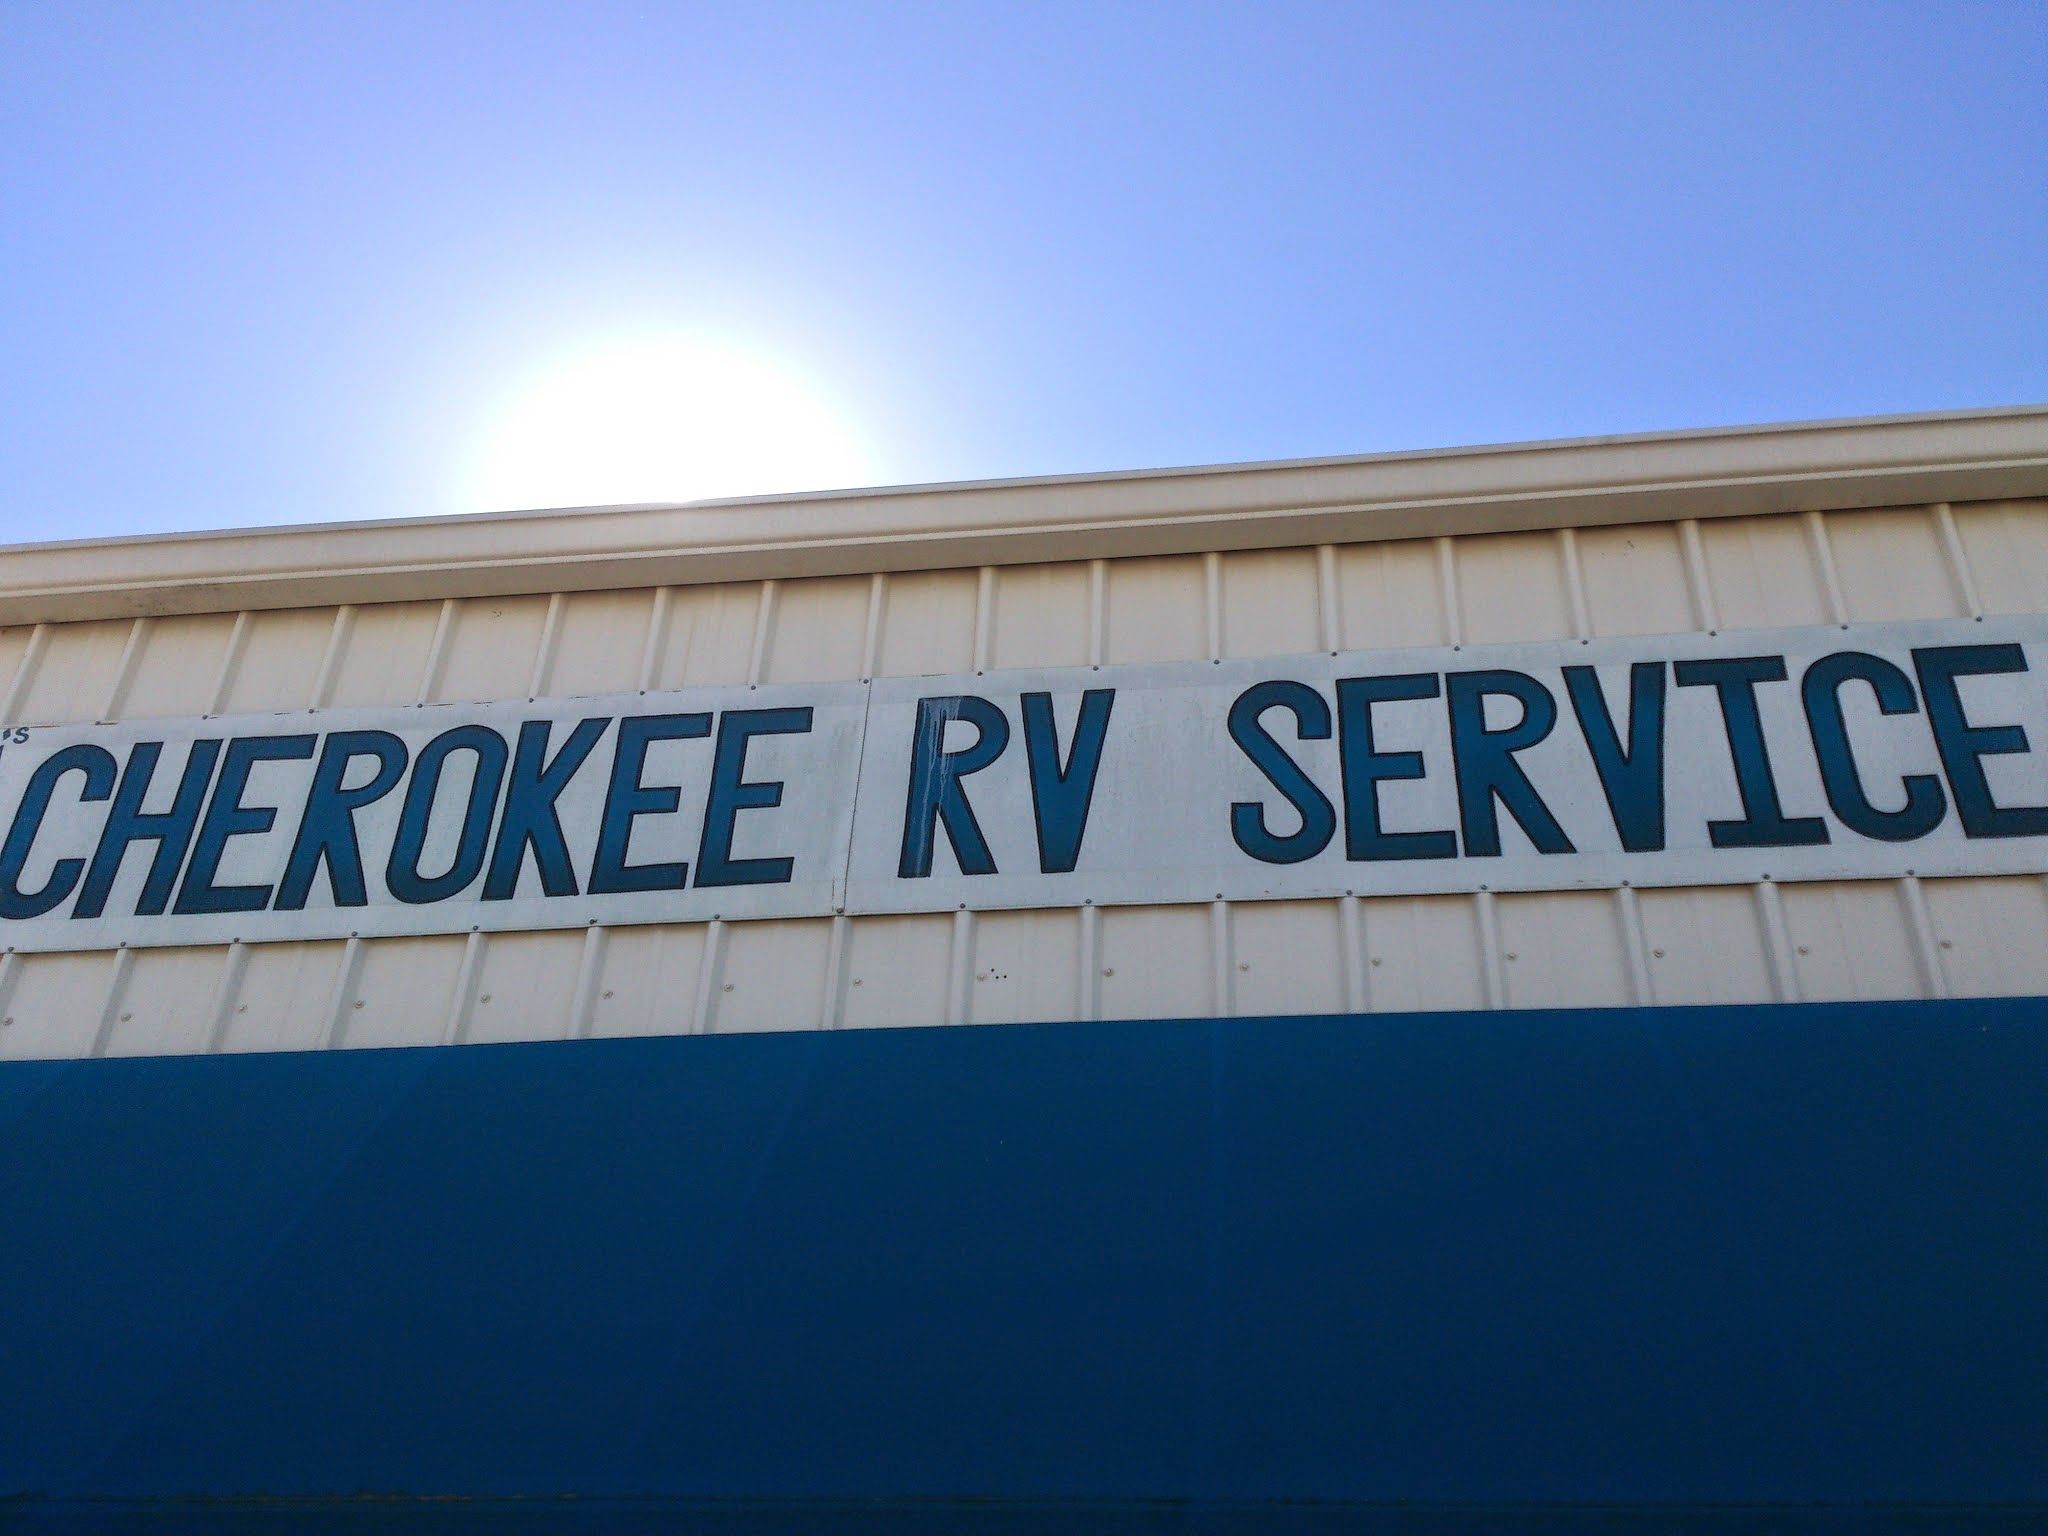 The CherokeeRV Service